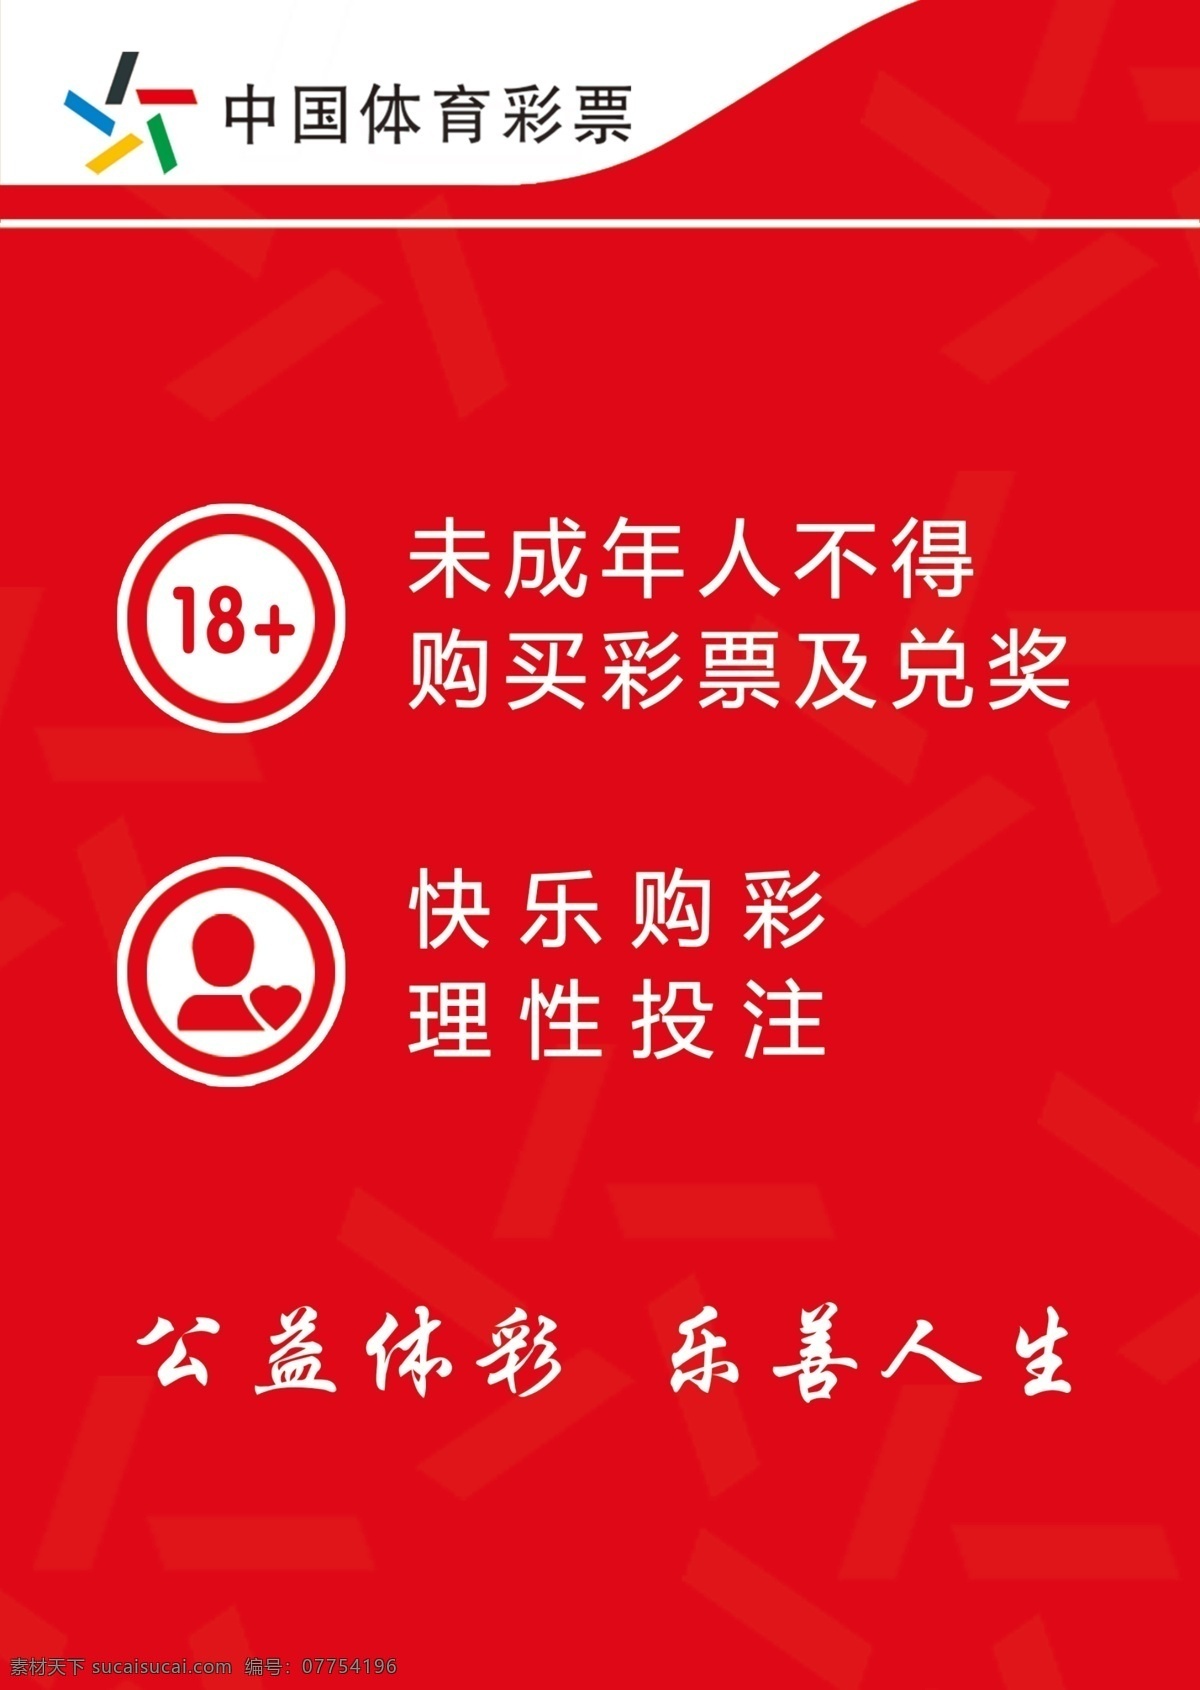 中国体彩 彩票 海报 未成年人 不得购买 公益体彩 理性投注